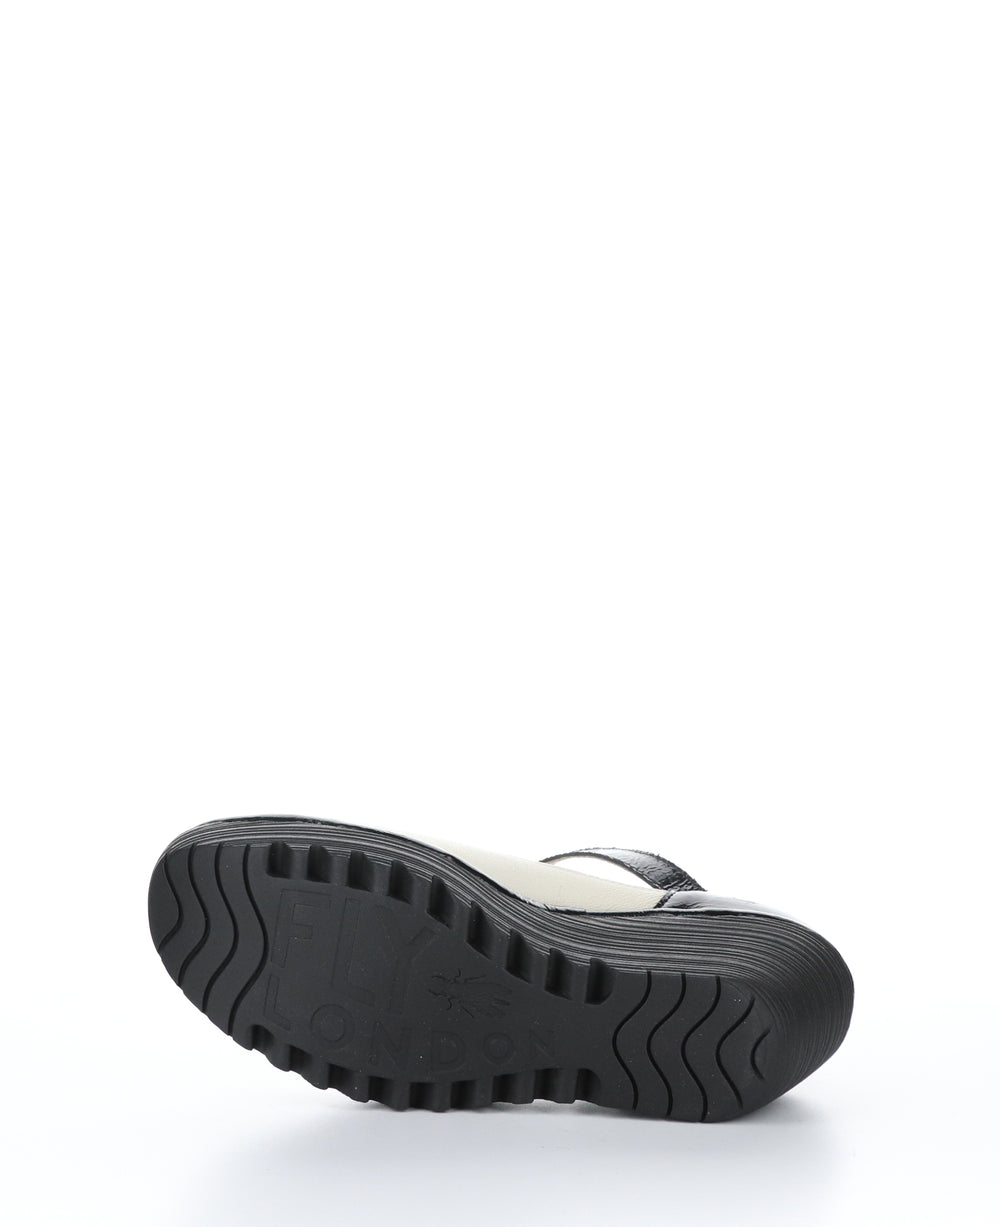 YAWO345FLY Off White/Black Round Toe Shoes